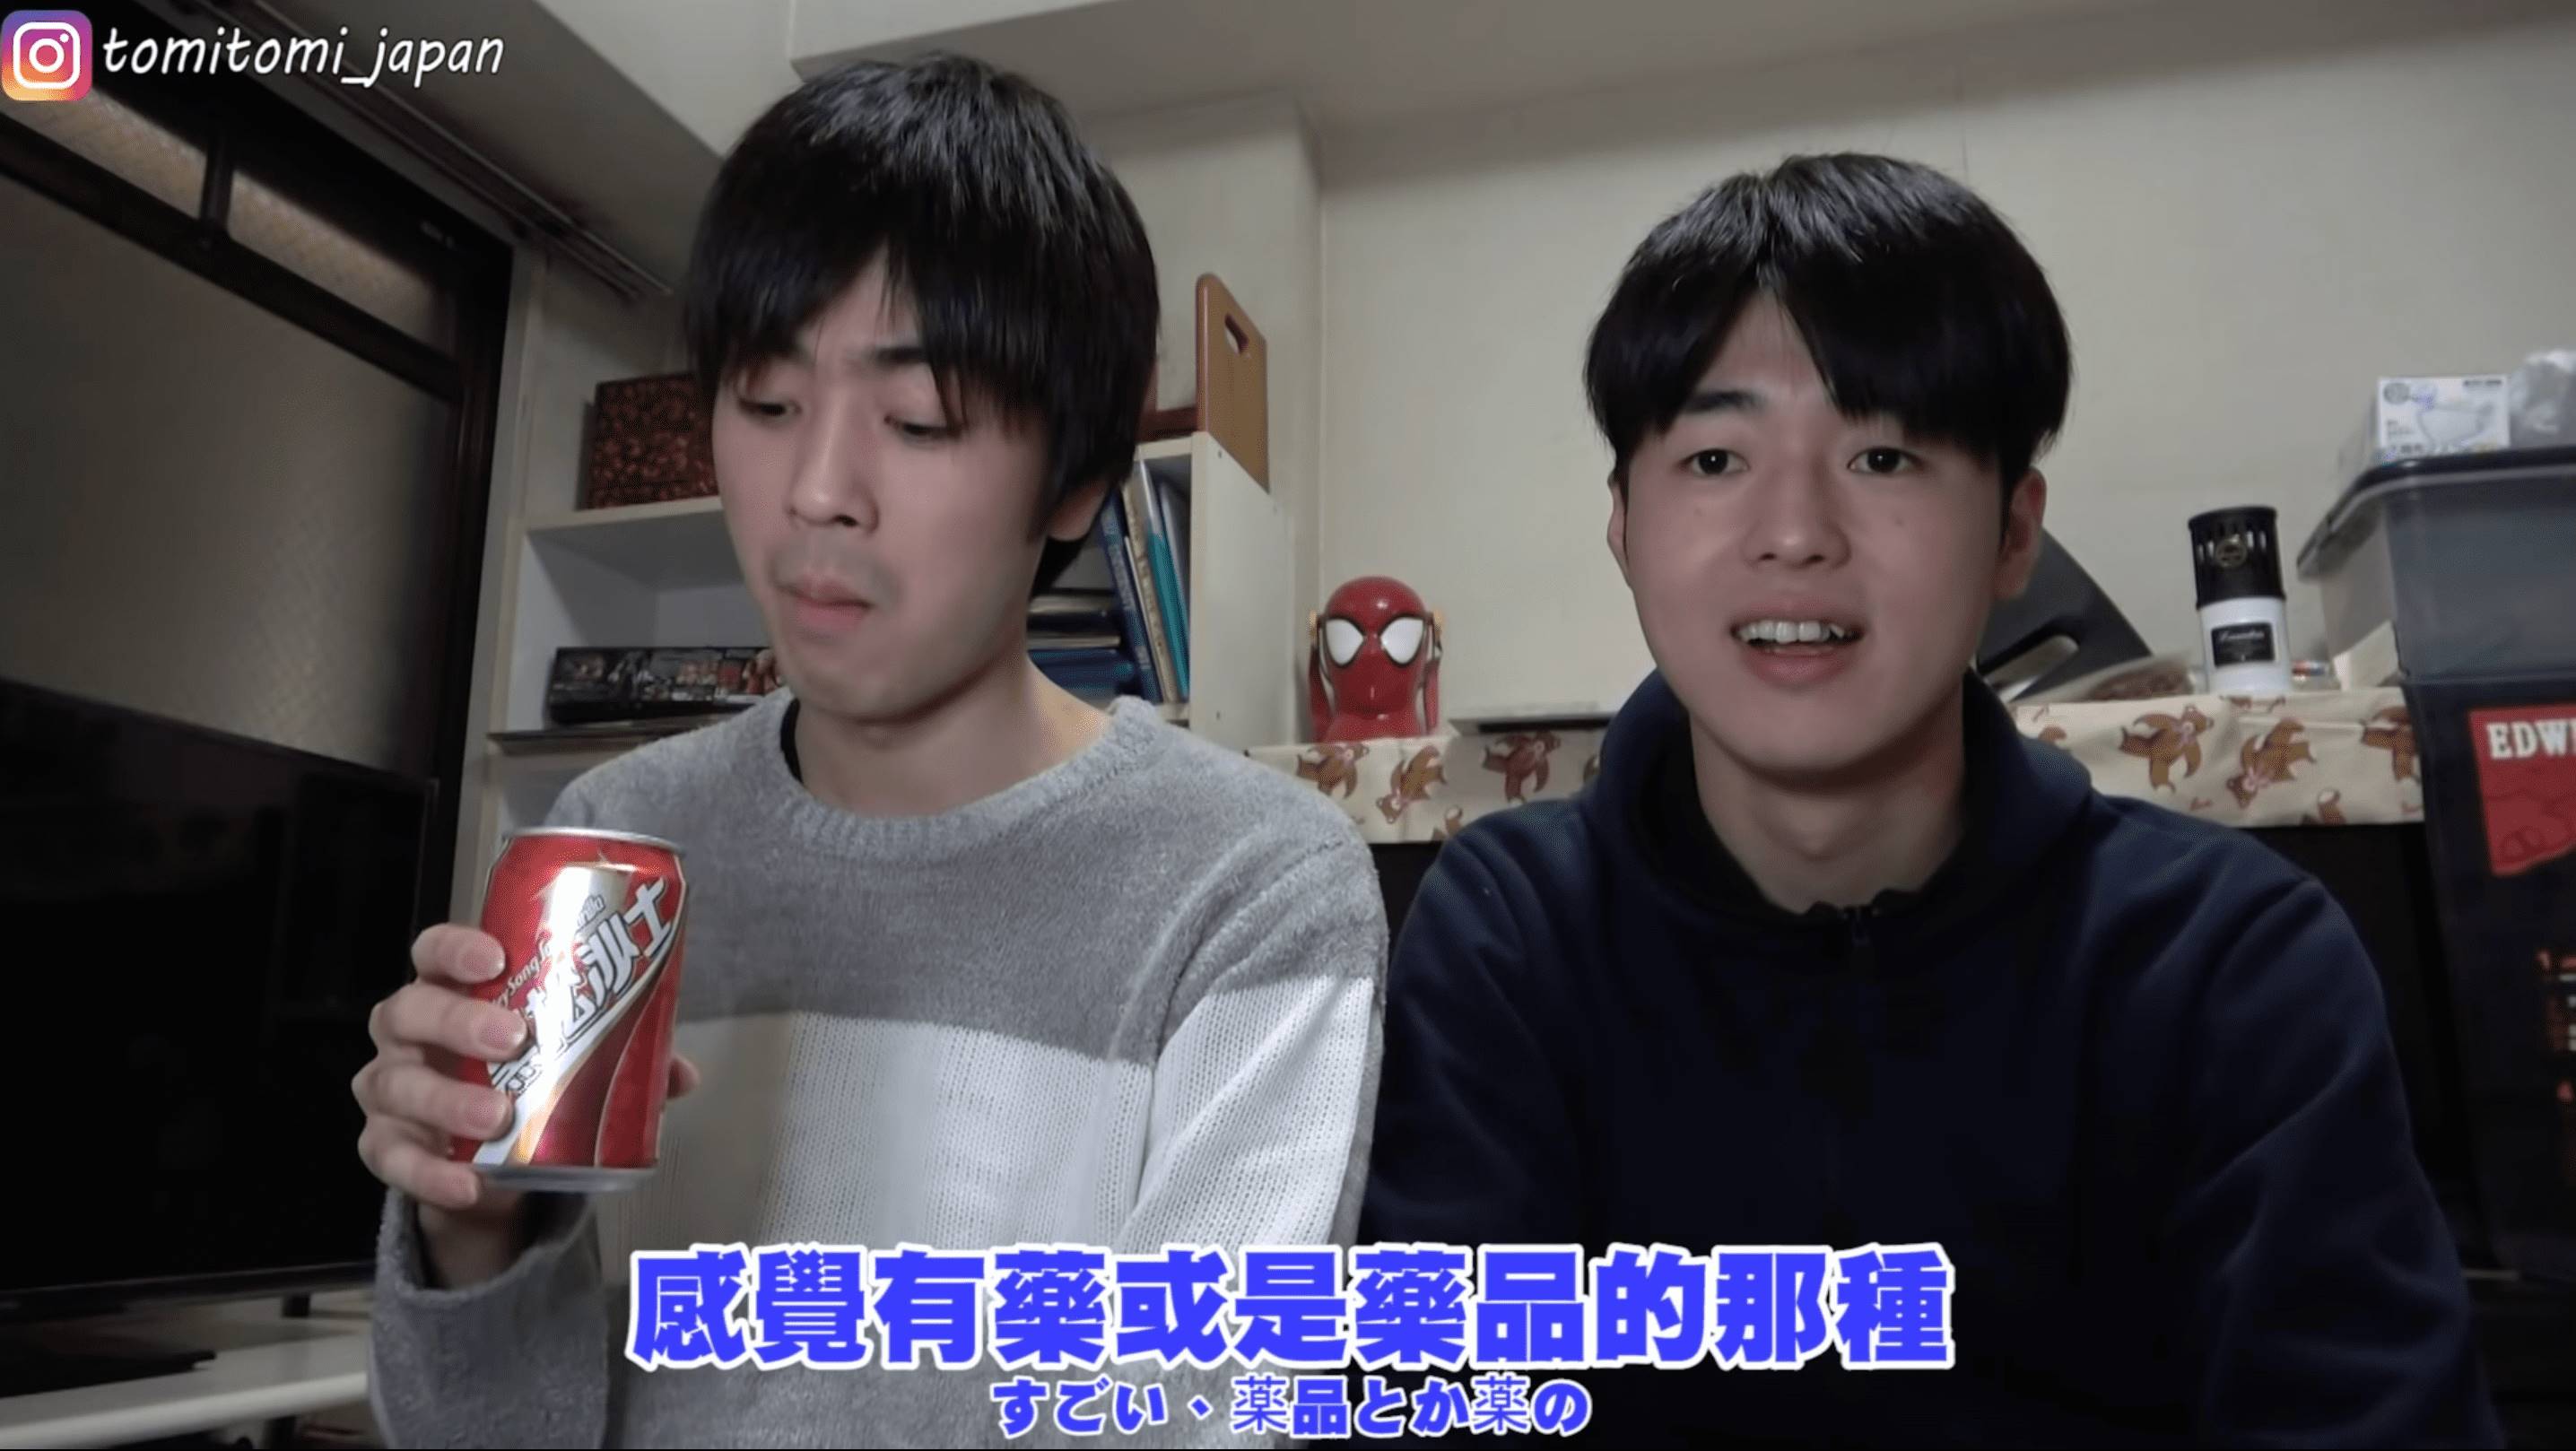 日本YouTuber Tommy讓親哥哥試喝黑松沙士。